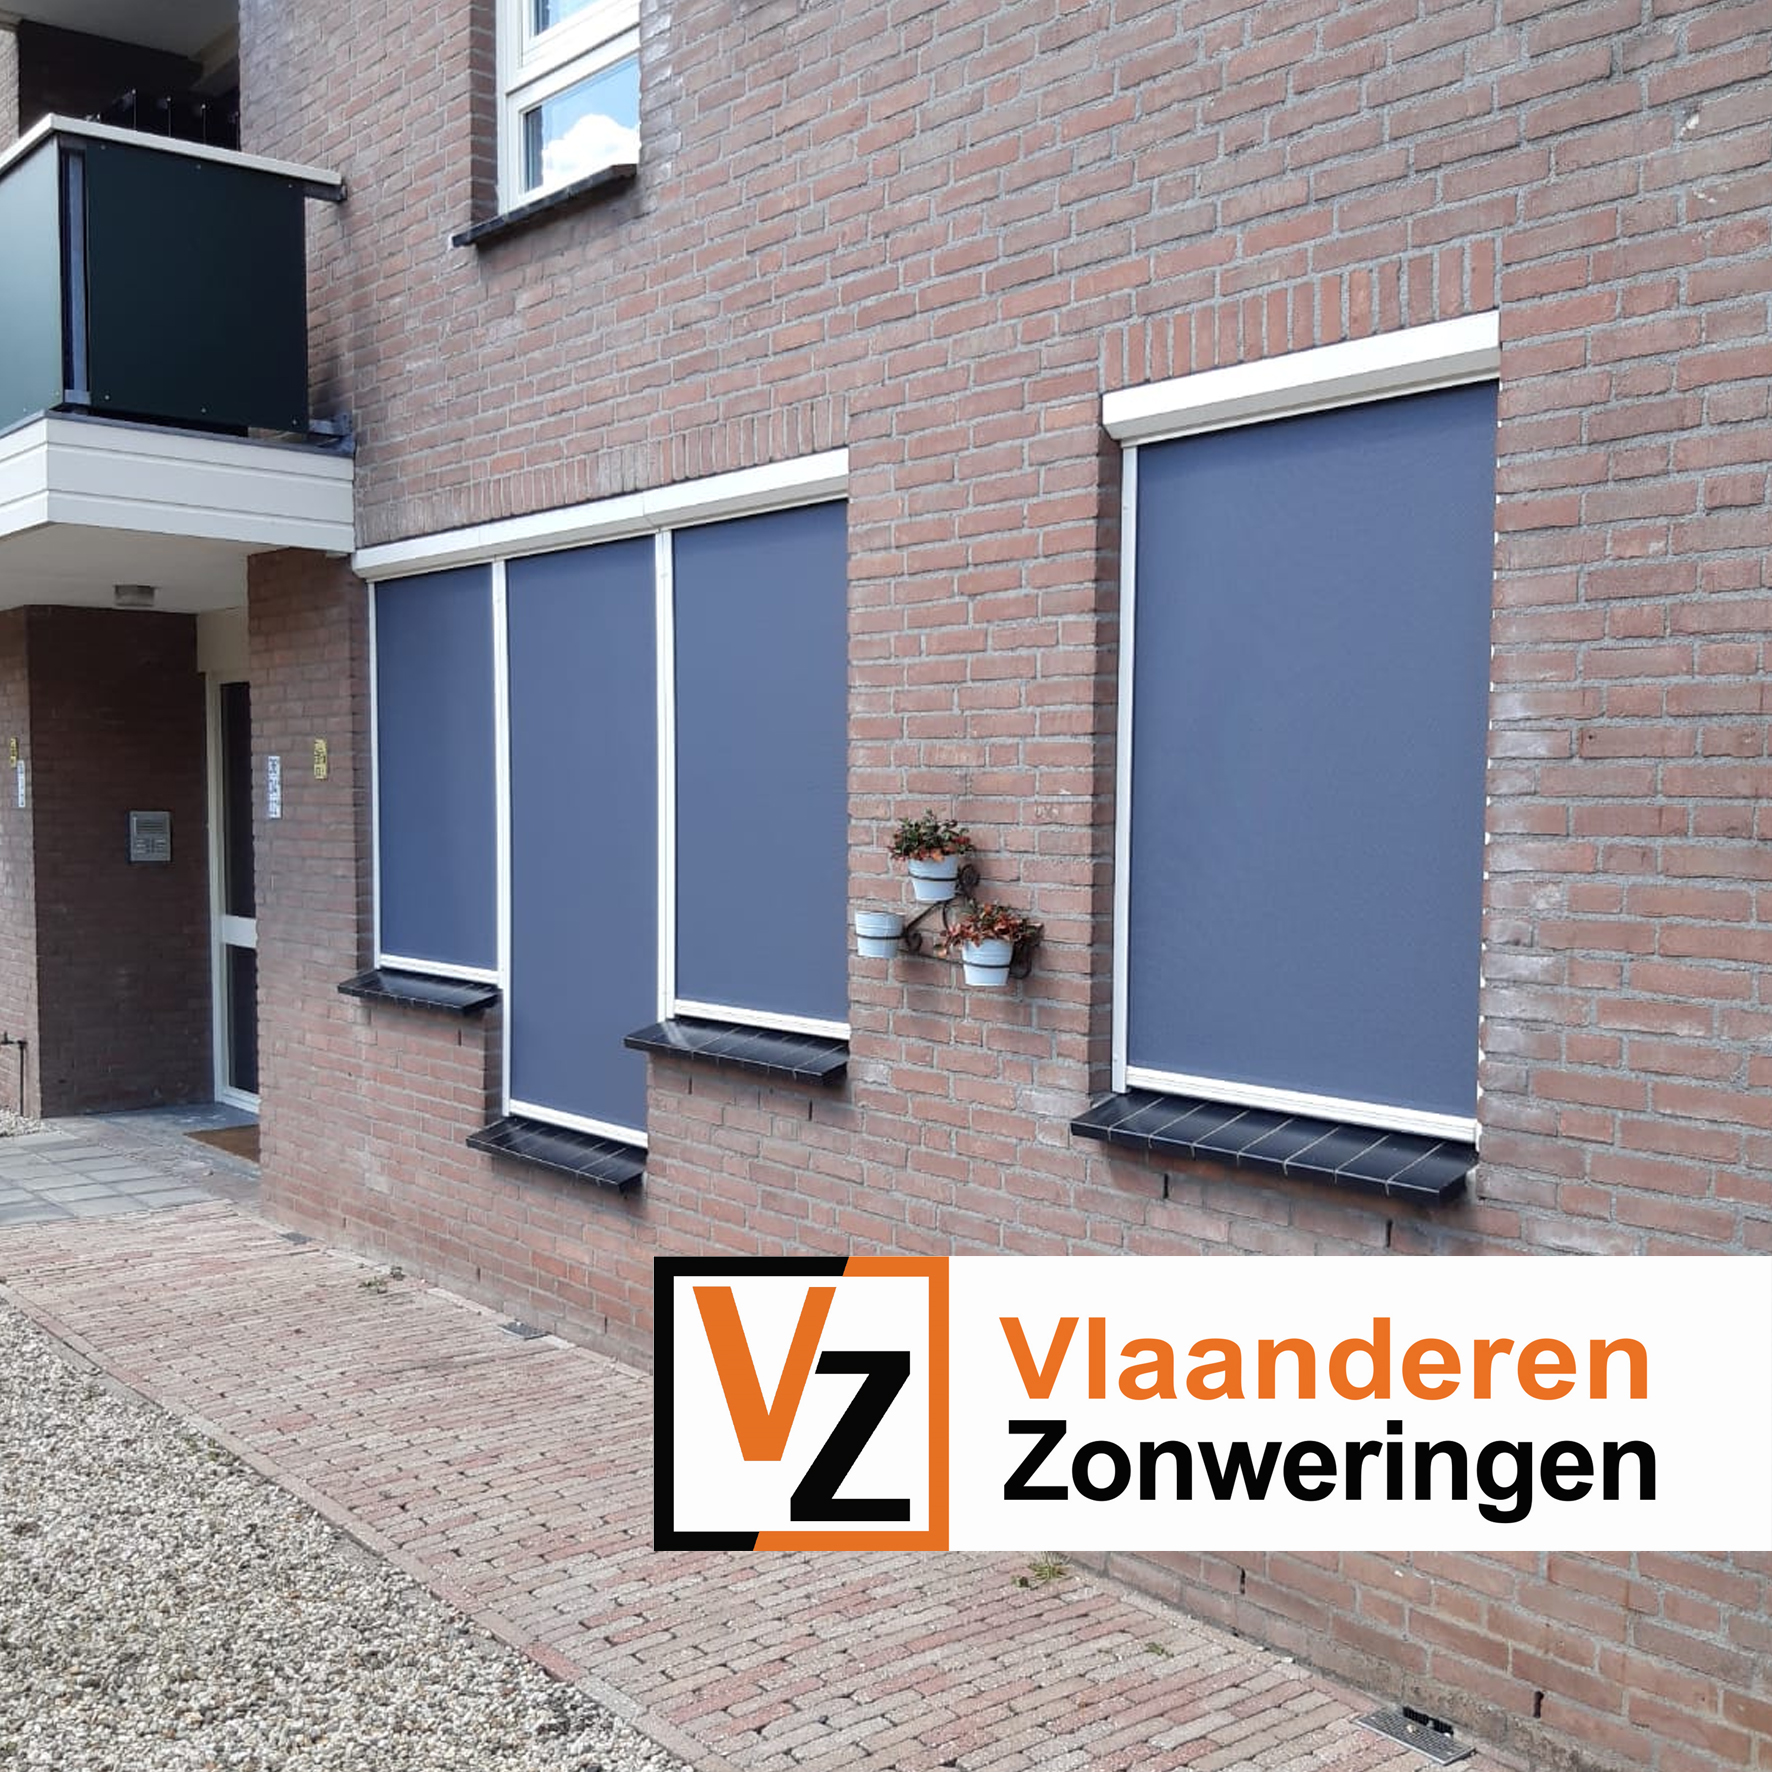 Ritsscreen Classic op ongelijke vensterbank, op maat gemaakt door Vlaanderen Zonweringen.
Geldermalsen, regio Tiel